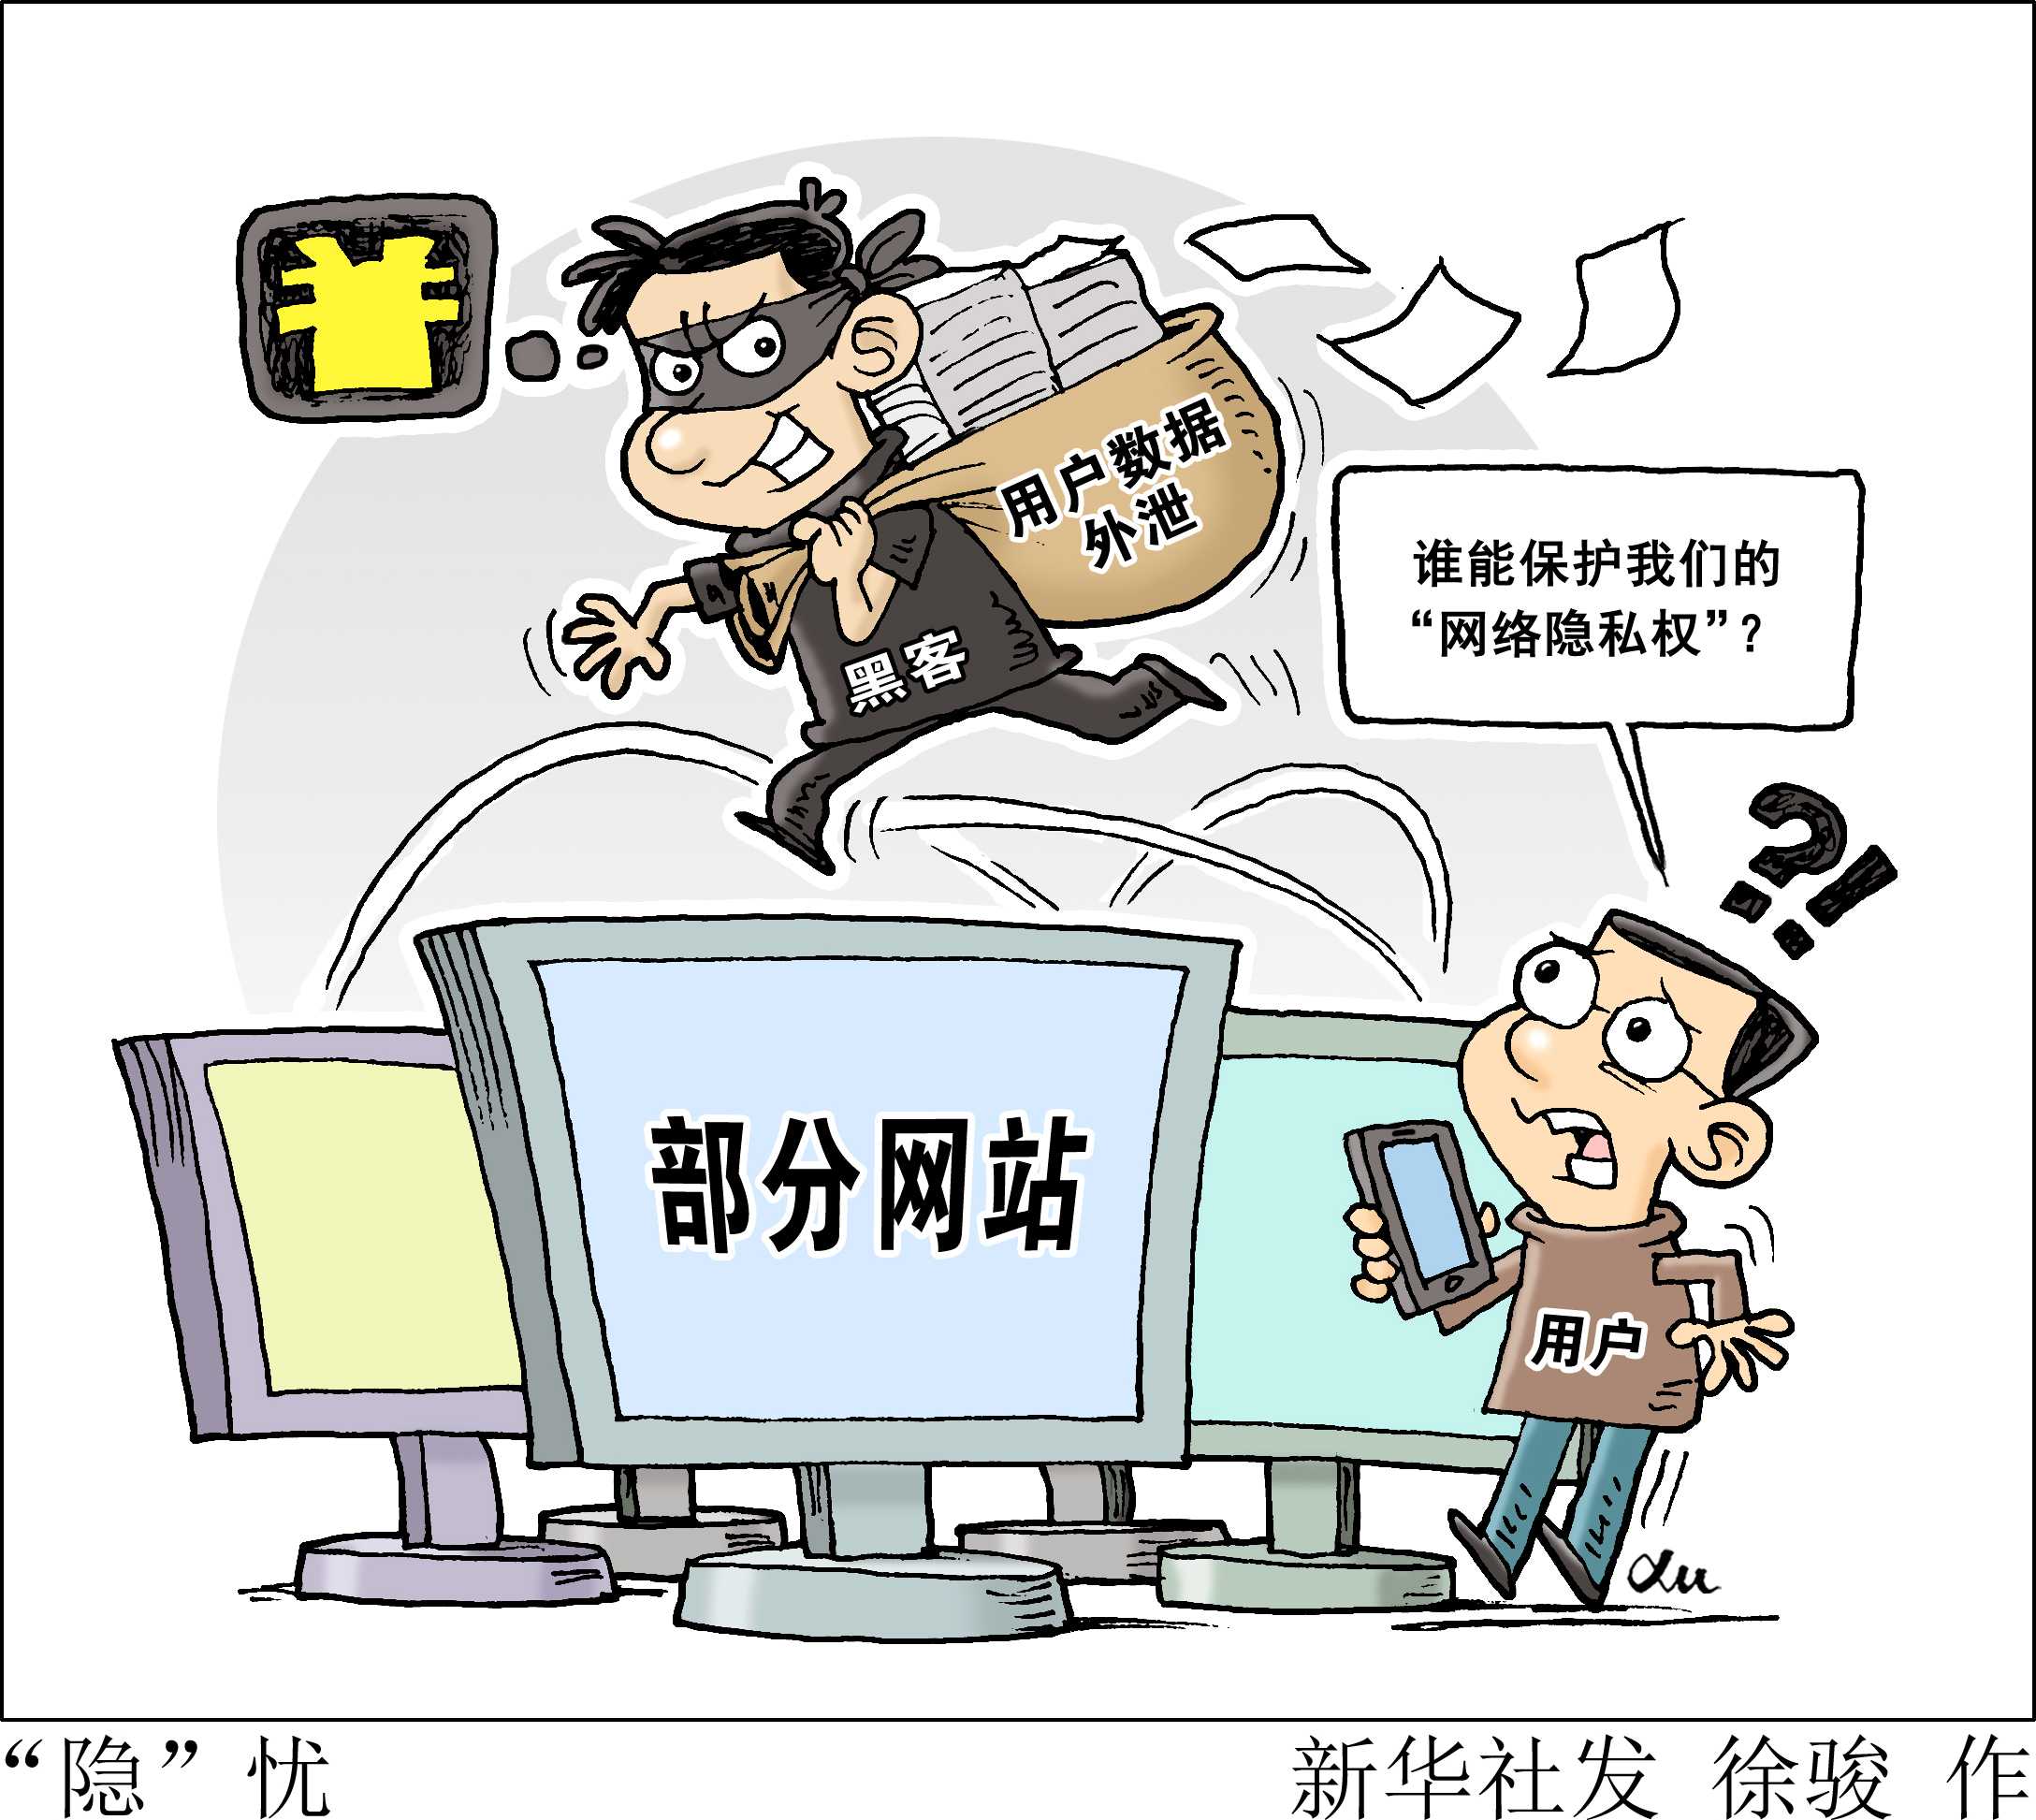 调取摄像头权限惹争议!爱奇艺、上海携程被调查